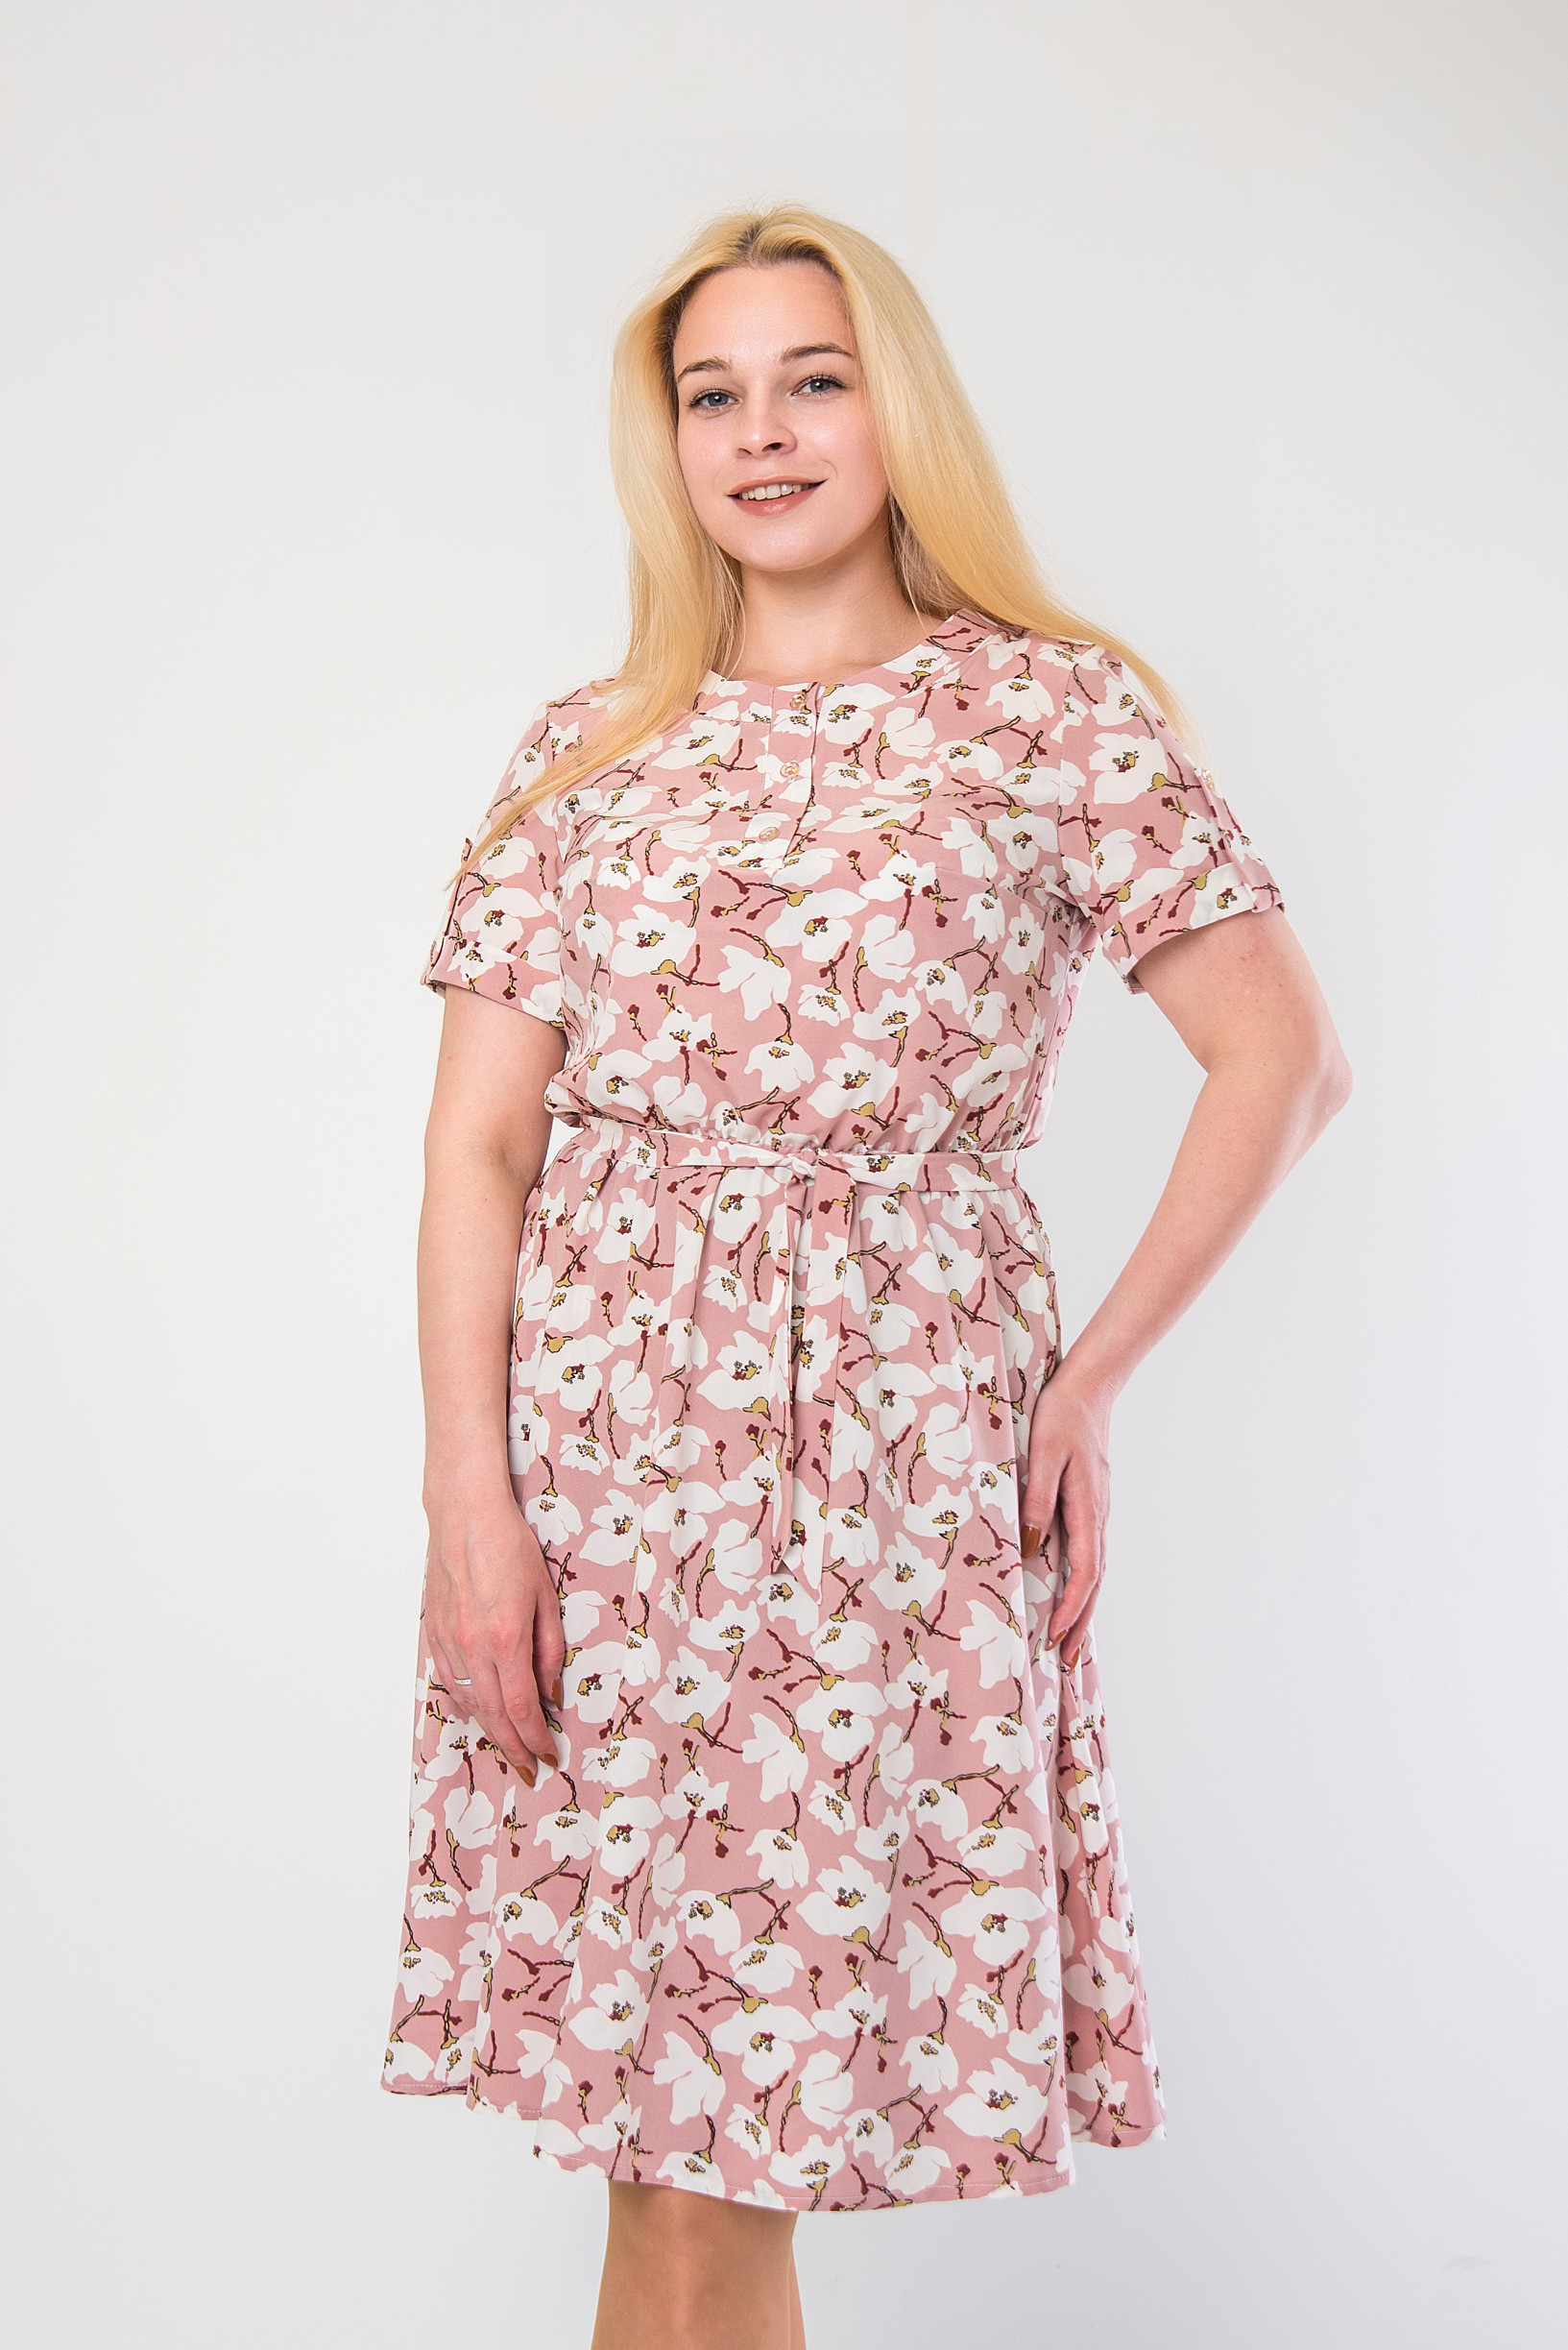 Нежное платье из софта п-897 розовое